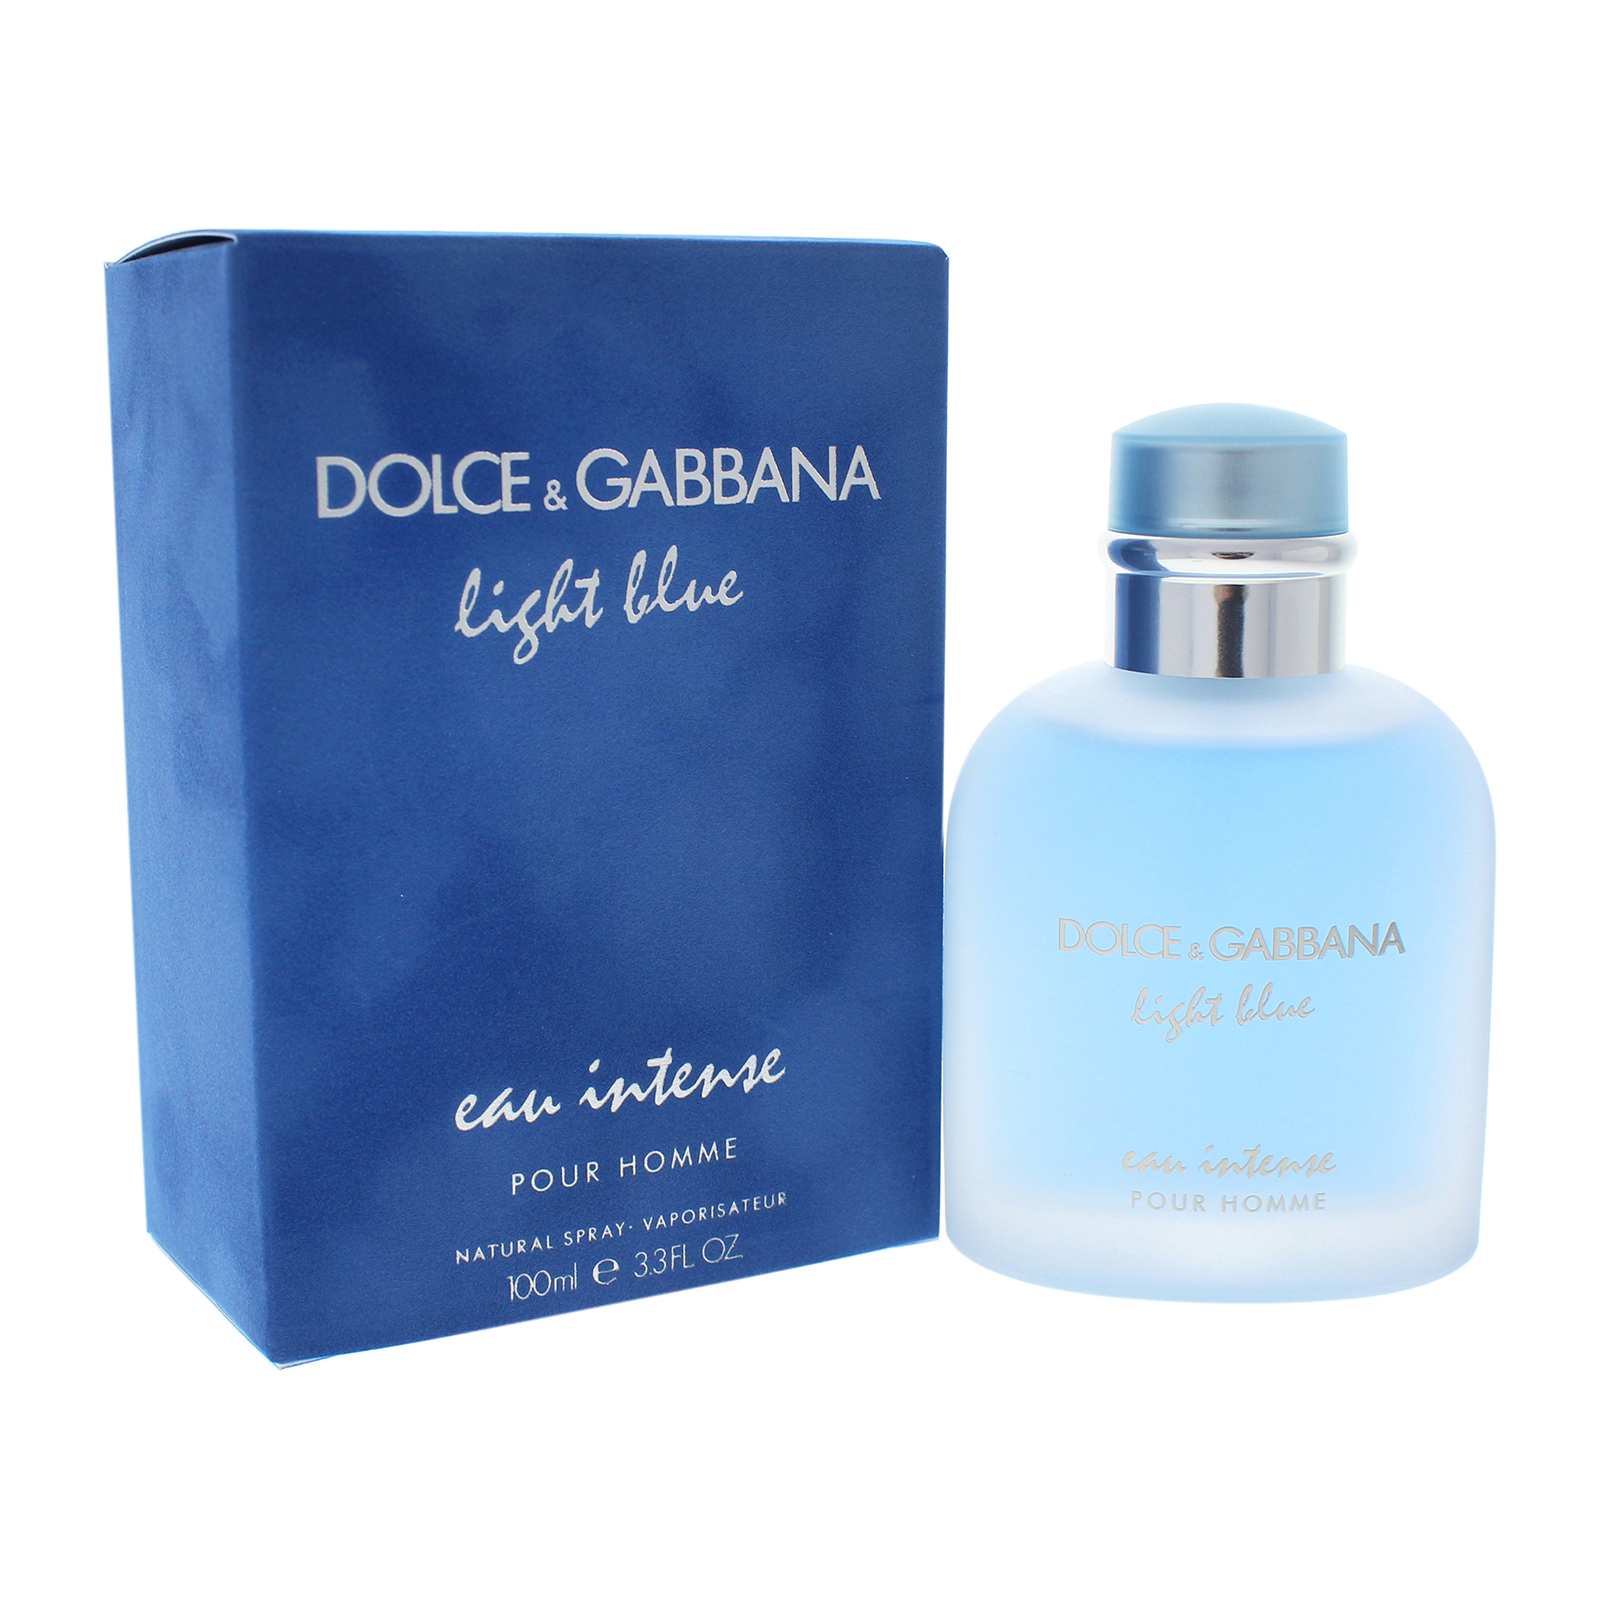 Gabbana intense pour homme. Dolce Gabbana Light Blue Eau de Toilette. Dolce Gabbana Light Blue 100ml. Dolce & Gabbana Light Blue Eau intense. Dolce & Gabbana Light Blue Eau de Toilette 100 ml.